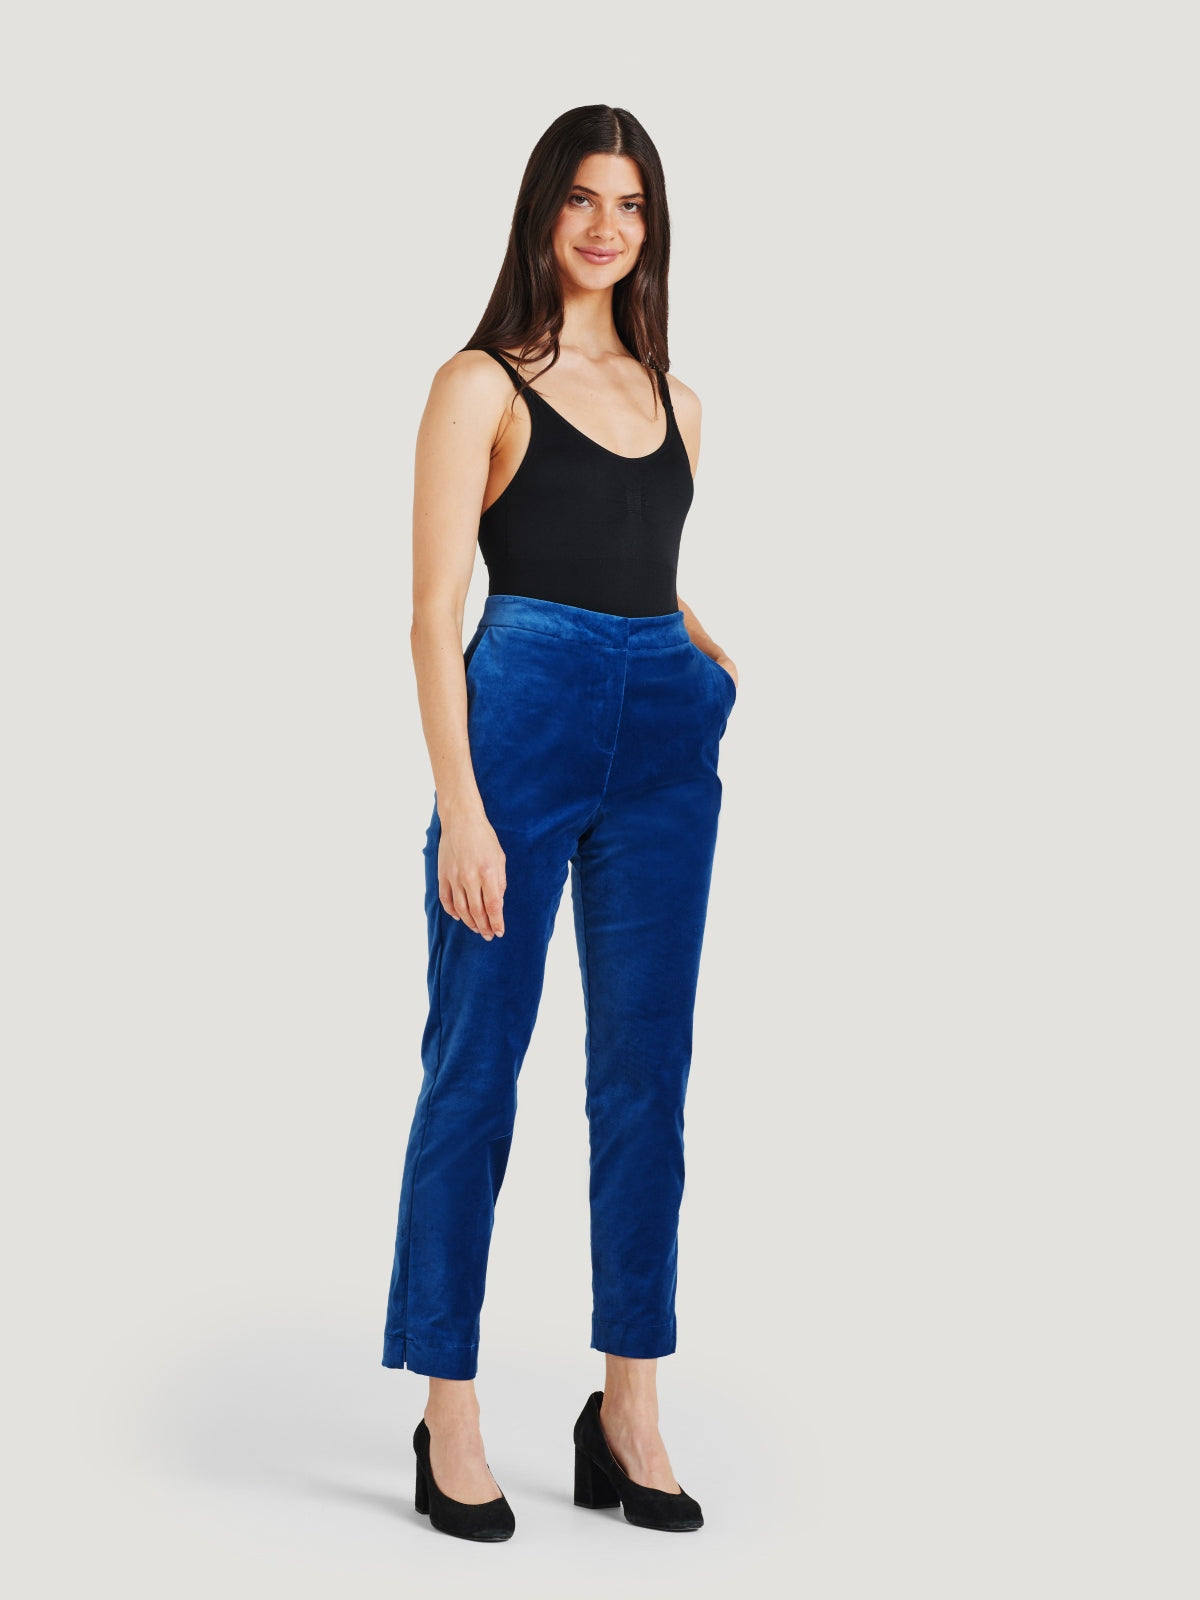 Meyer - Men's Pants - Oslo 8572 - Exclusive Cotton Velvet Trousers Size  54D/38US | eBay